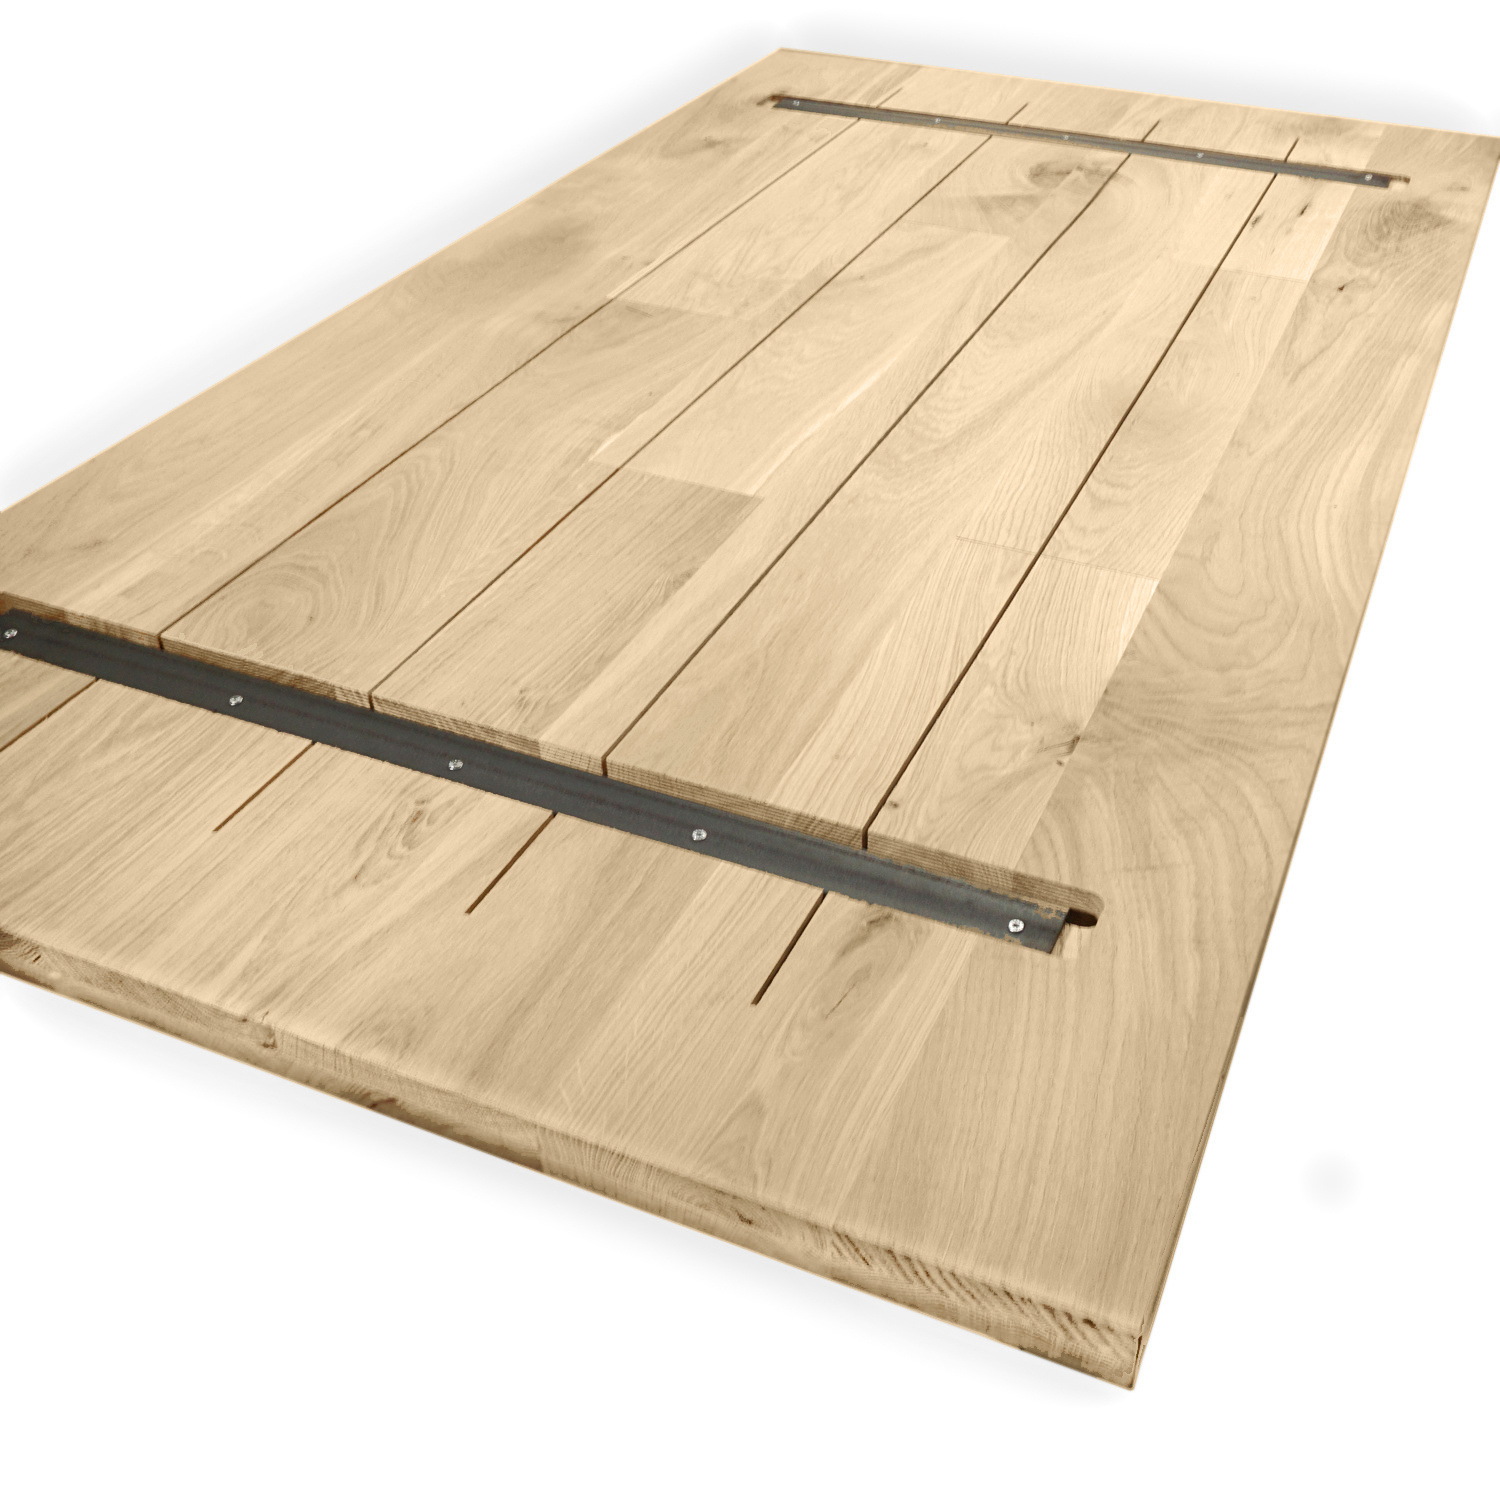  Tischplatte Eiche nach Maß - 4 cm dick - Eichenholz rustikal - Eiche Tischplatte massiv - verleimt & künstlich getrocknet (HF 8-12%) - 50-120x50-300 cm